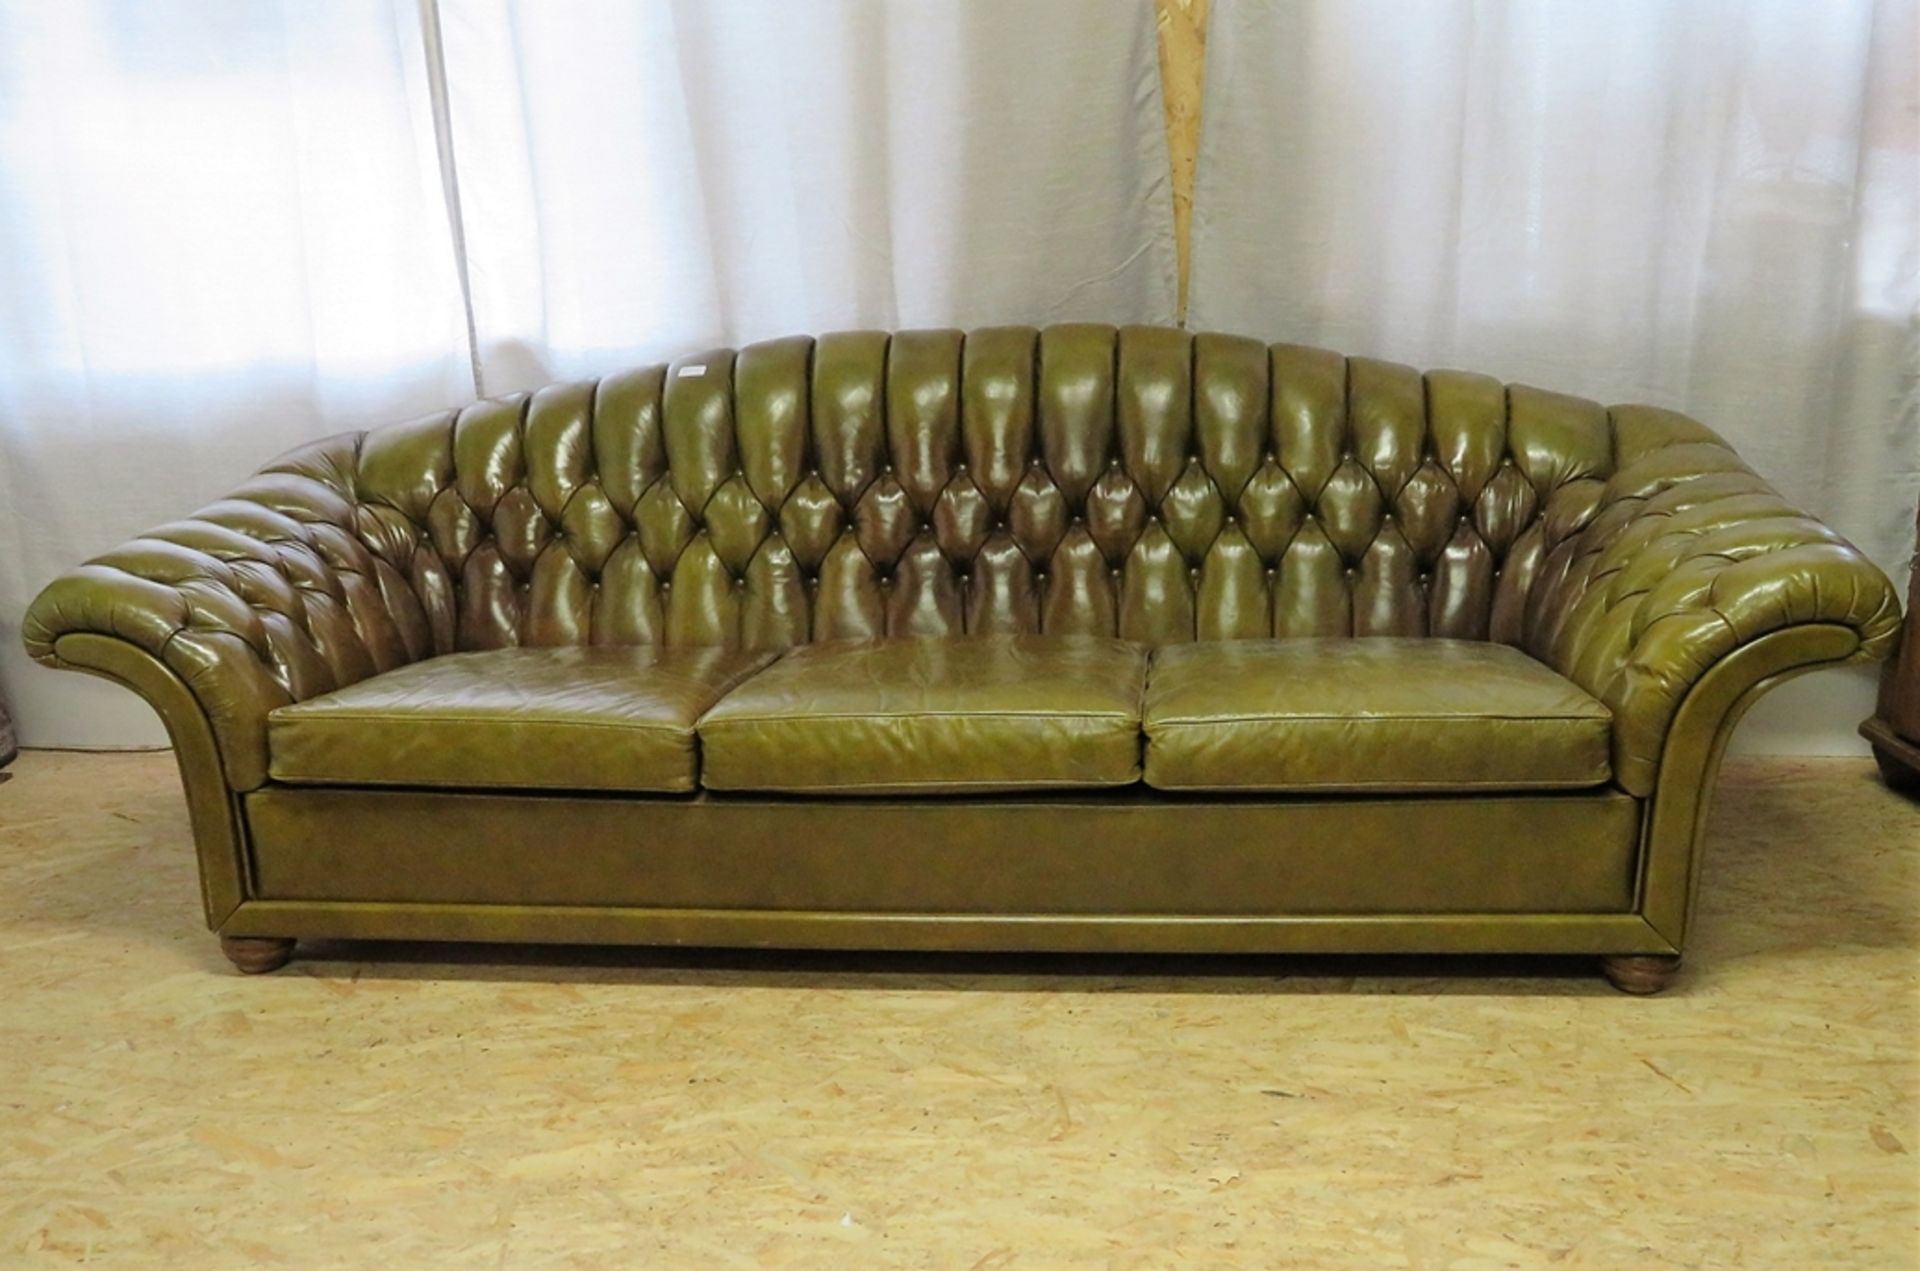 Chesterfield-Sofa, England, 1960/70er Jahre, grünliches, genopptes Leder, alter